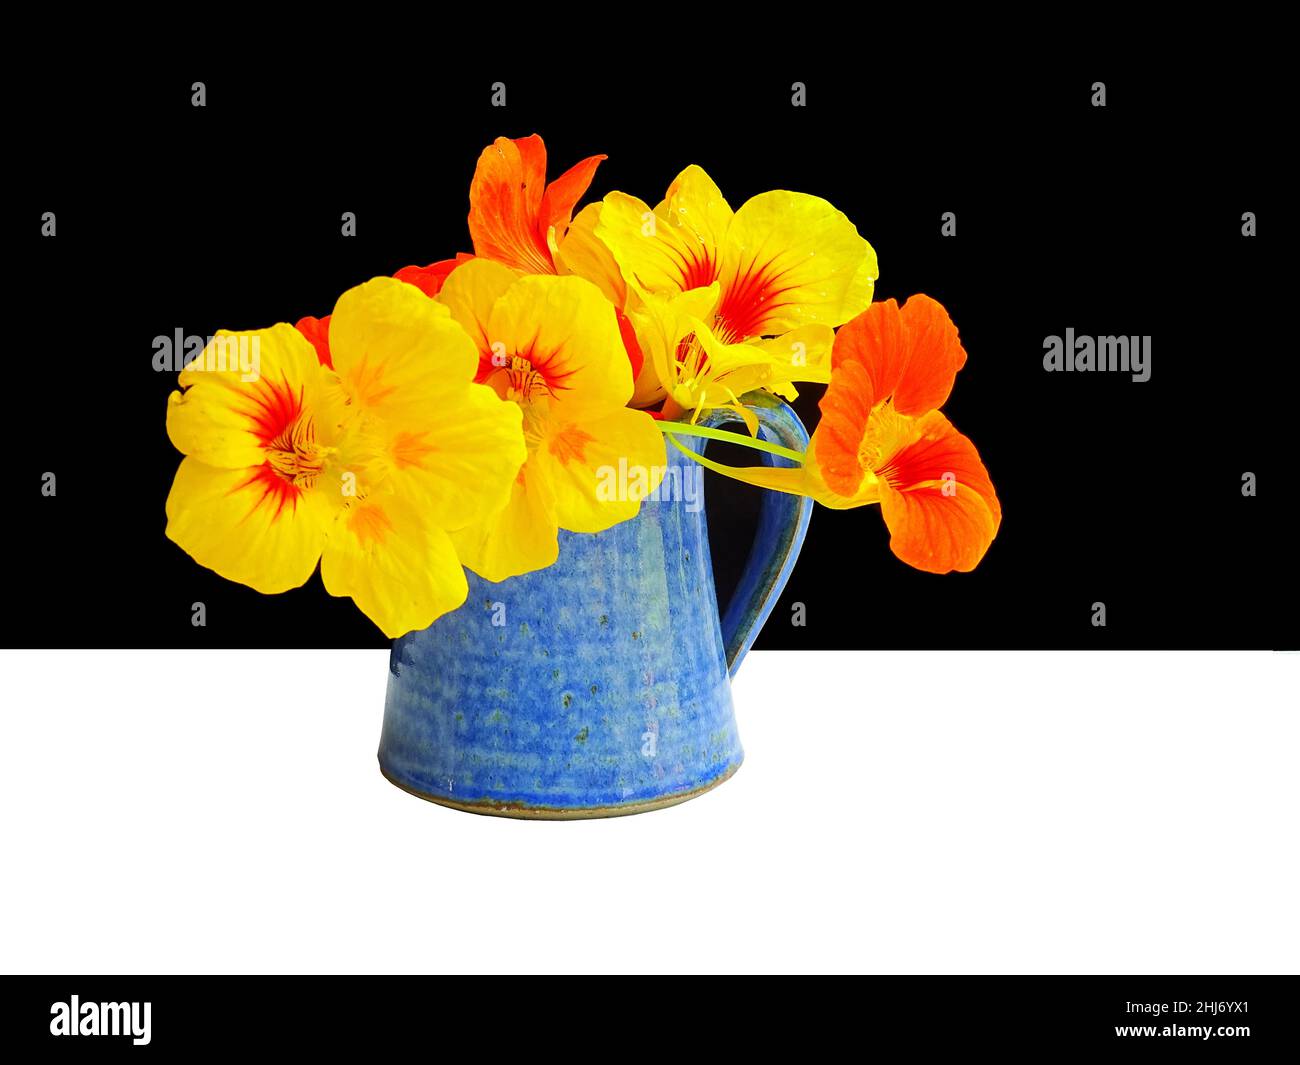 Un mazzetto di fiori arancioni e gialli di nasturzi (Tropaeolum majus) in vaso blu, con fondo bianco e nero, con colori giallo, arancio, Foto Stock